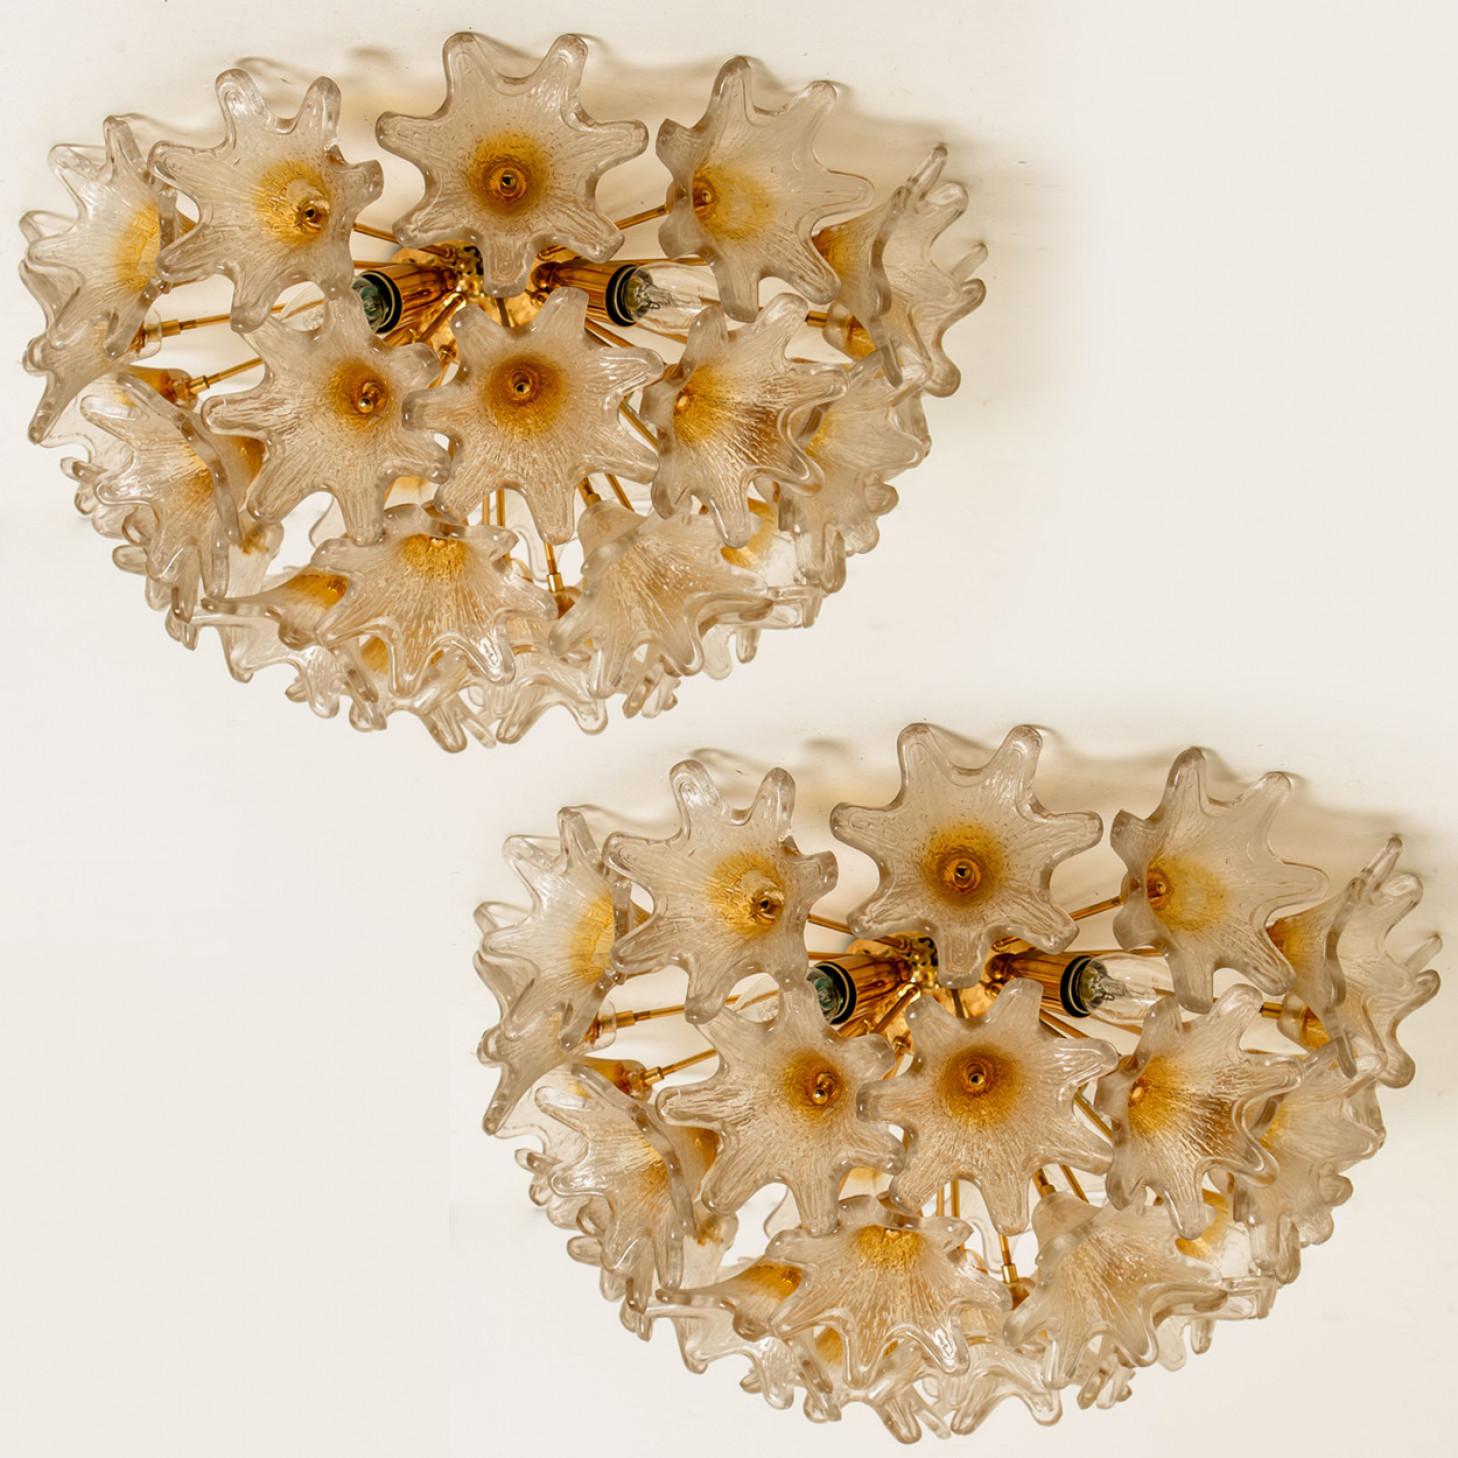 Élégante paire de luminaires en Murano dans le style de Paolo Venini pour VeArt, Italie, années 1970. Tige et matériel en laiton et fixation en acier blanc. Plusieurs étoiles en or ou en ambre et transparentes ressemblent à des fleurs.

L'ensemble